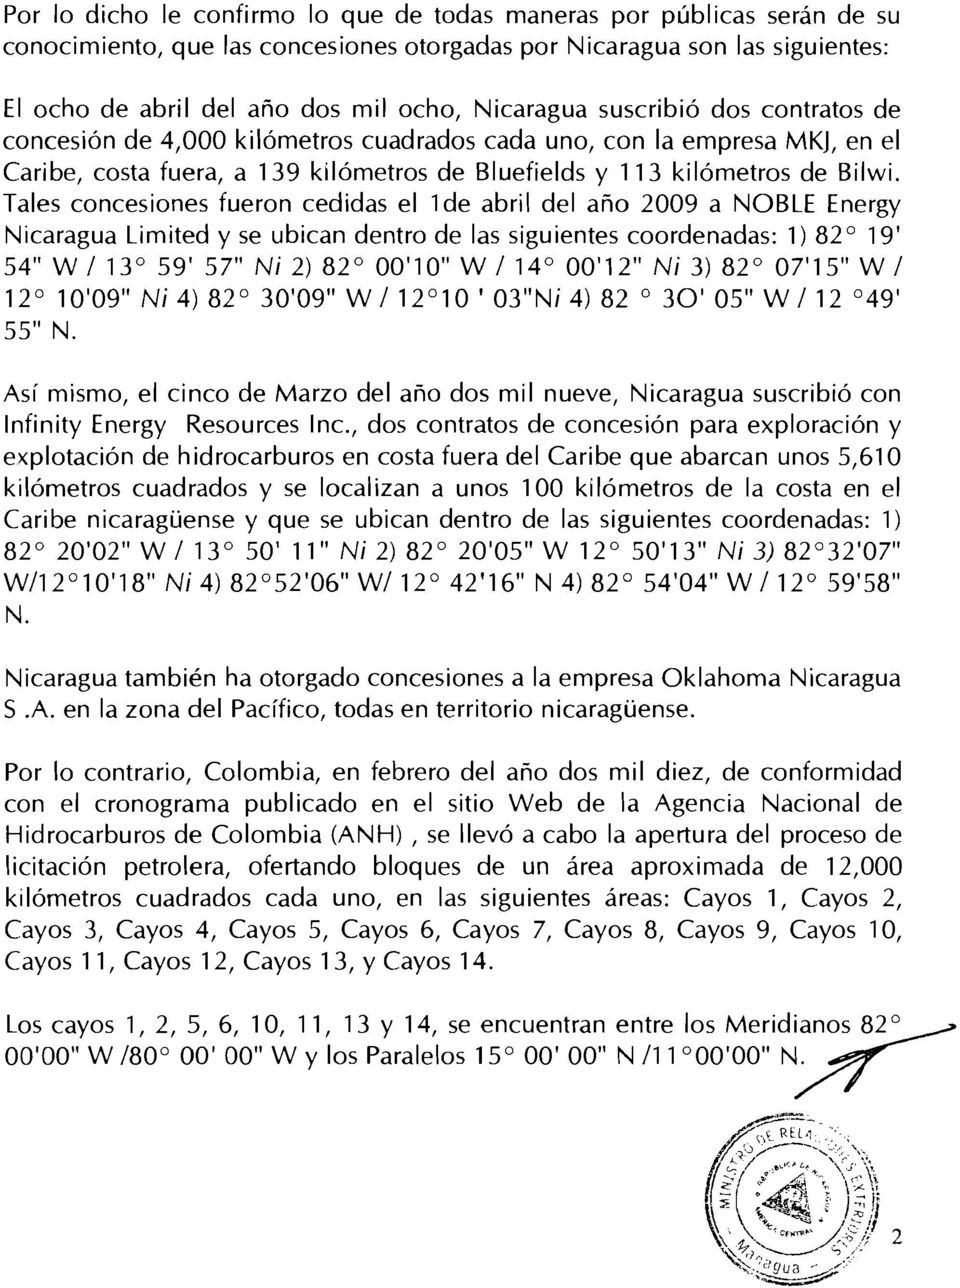 Tales concesiones fueron cedidas el 1de abril del año 2009 a NOBLE Energy Nicaragua Limited y se ubican dentro de las siguientes coordenadas: 1) 82 19' 54" W /13 59' 57" Ni 2) 82 00'10" W /14 00'12"